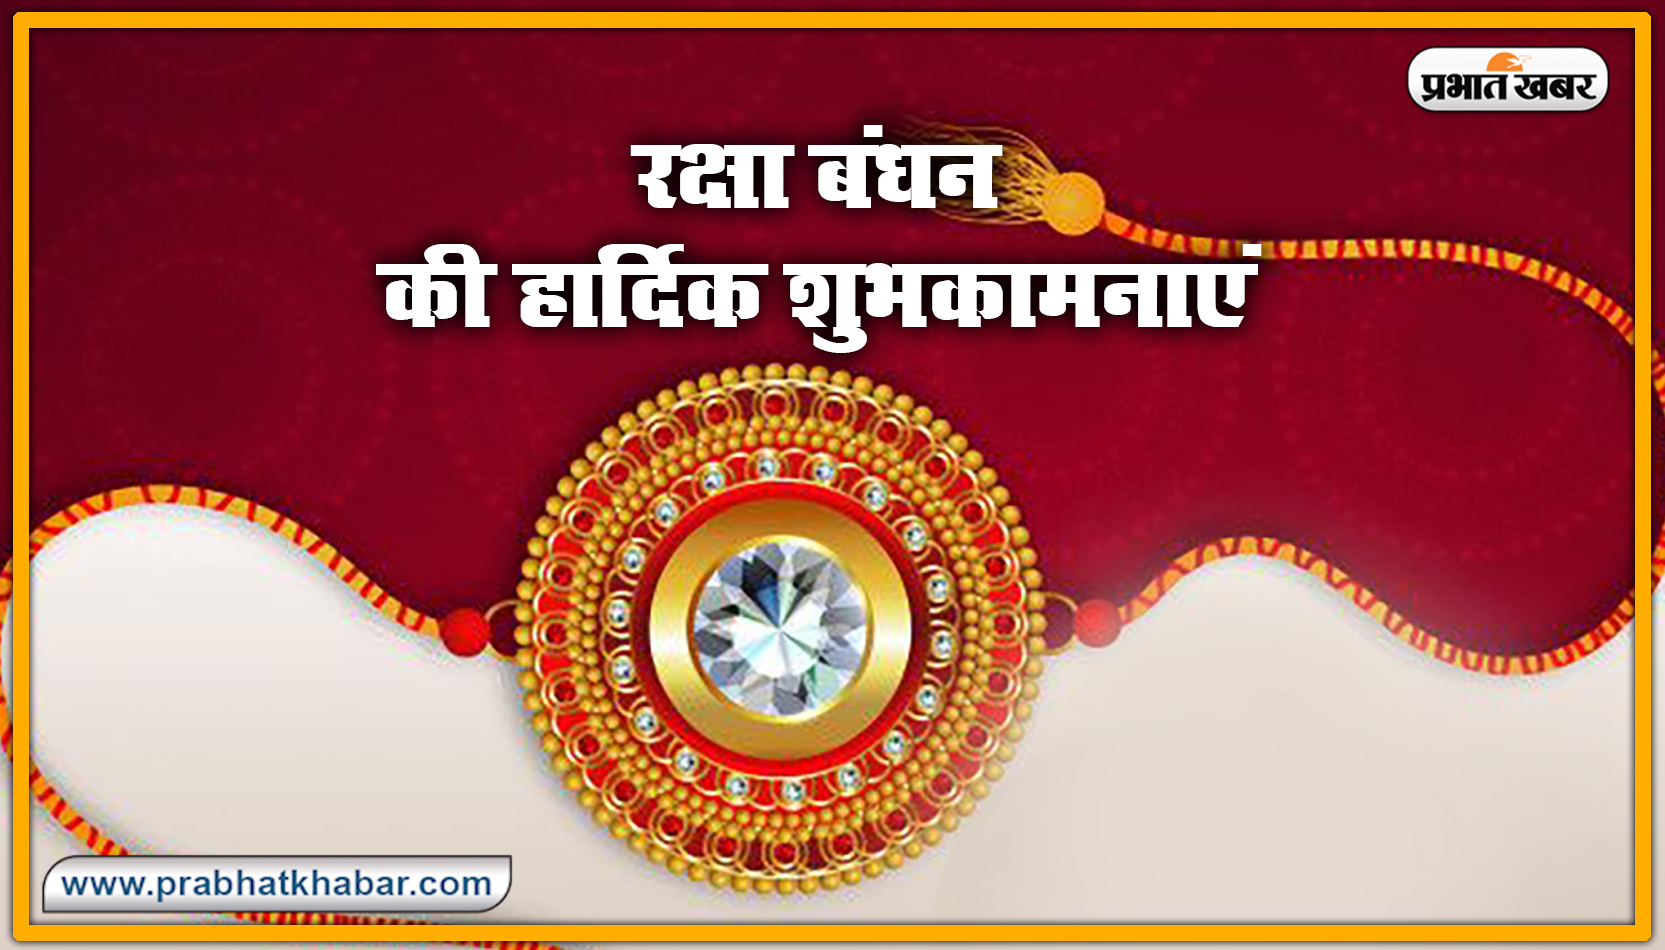 Happy Raksha Bandhan Wishes: रक्षाबंधन के अवसर पर यहां से भेजें शुभकामना संदेश 